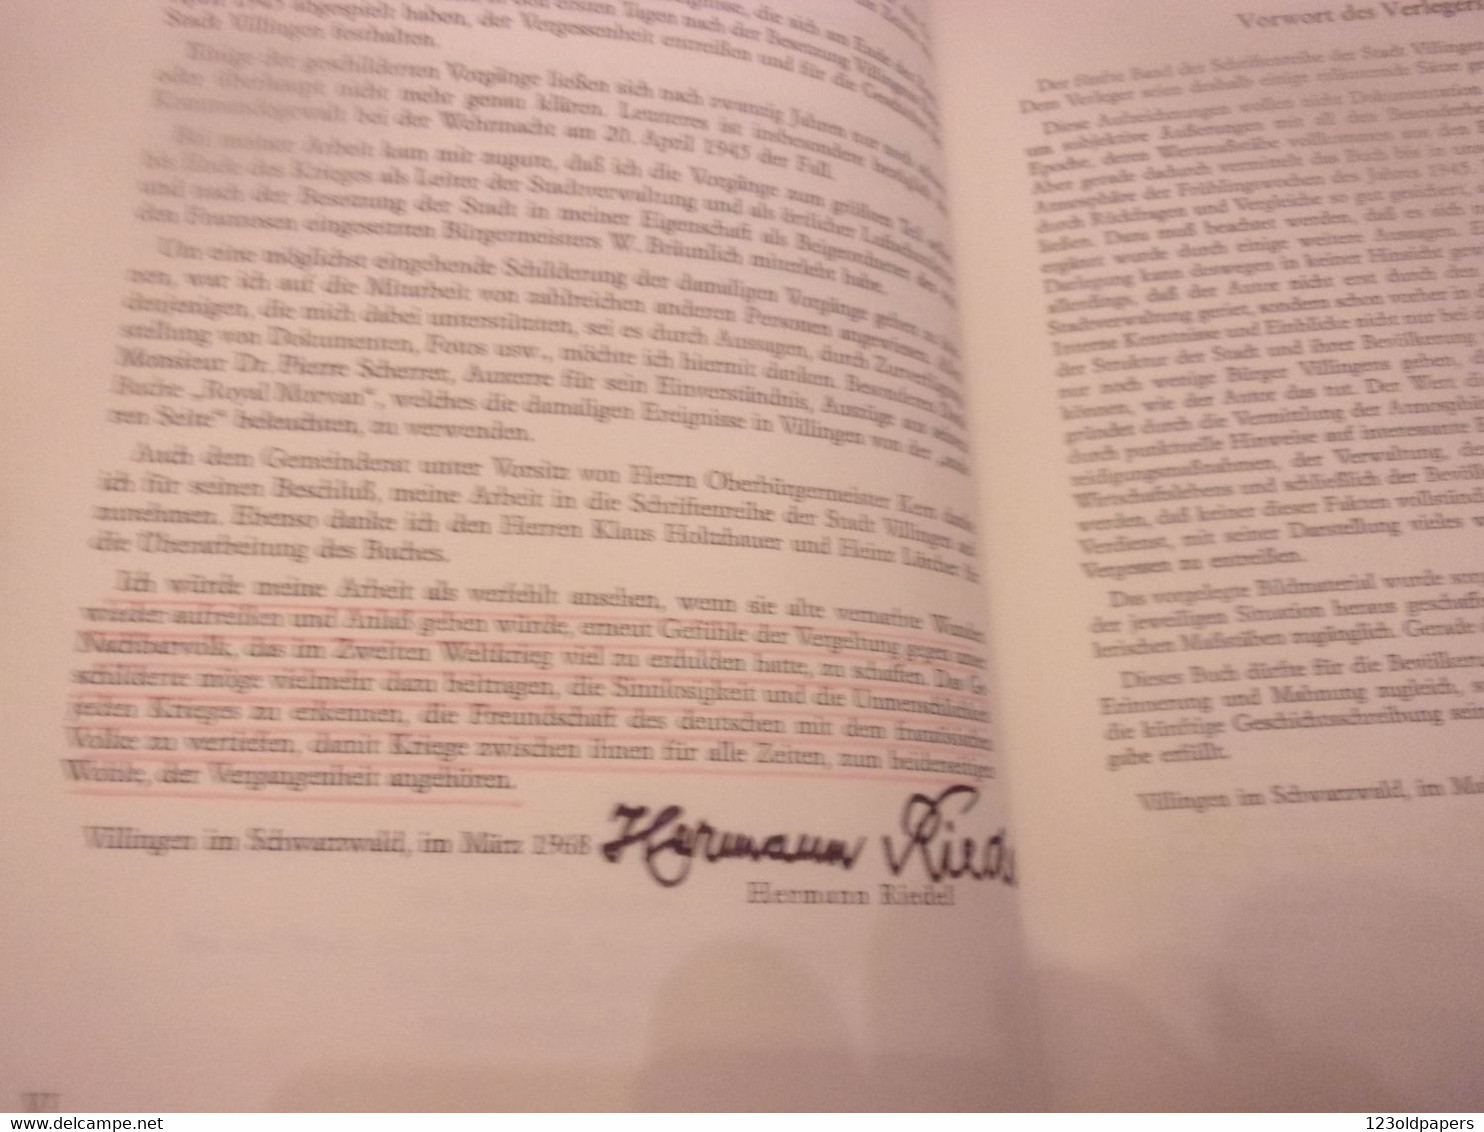 ♥️ 1968 HERMANN RIEDEL Widmung Senden VILLINGEN 1945  BERICHT AUS EINER SCHWEREN WWII WELTKRIEG - Autographed